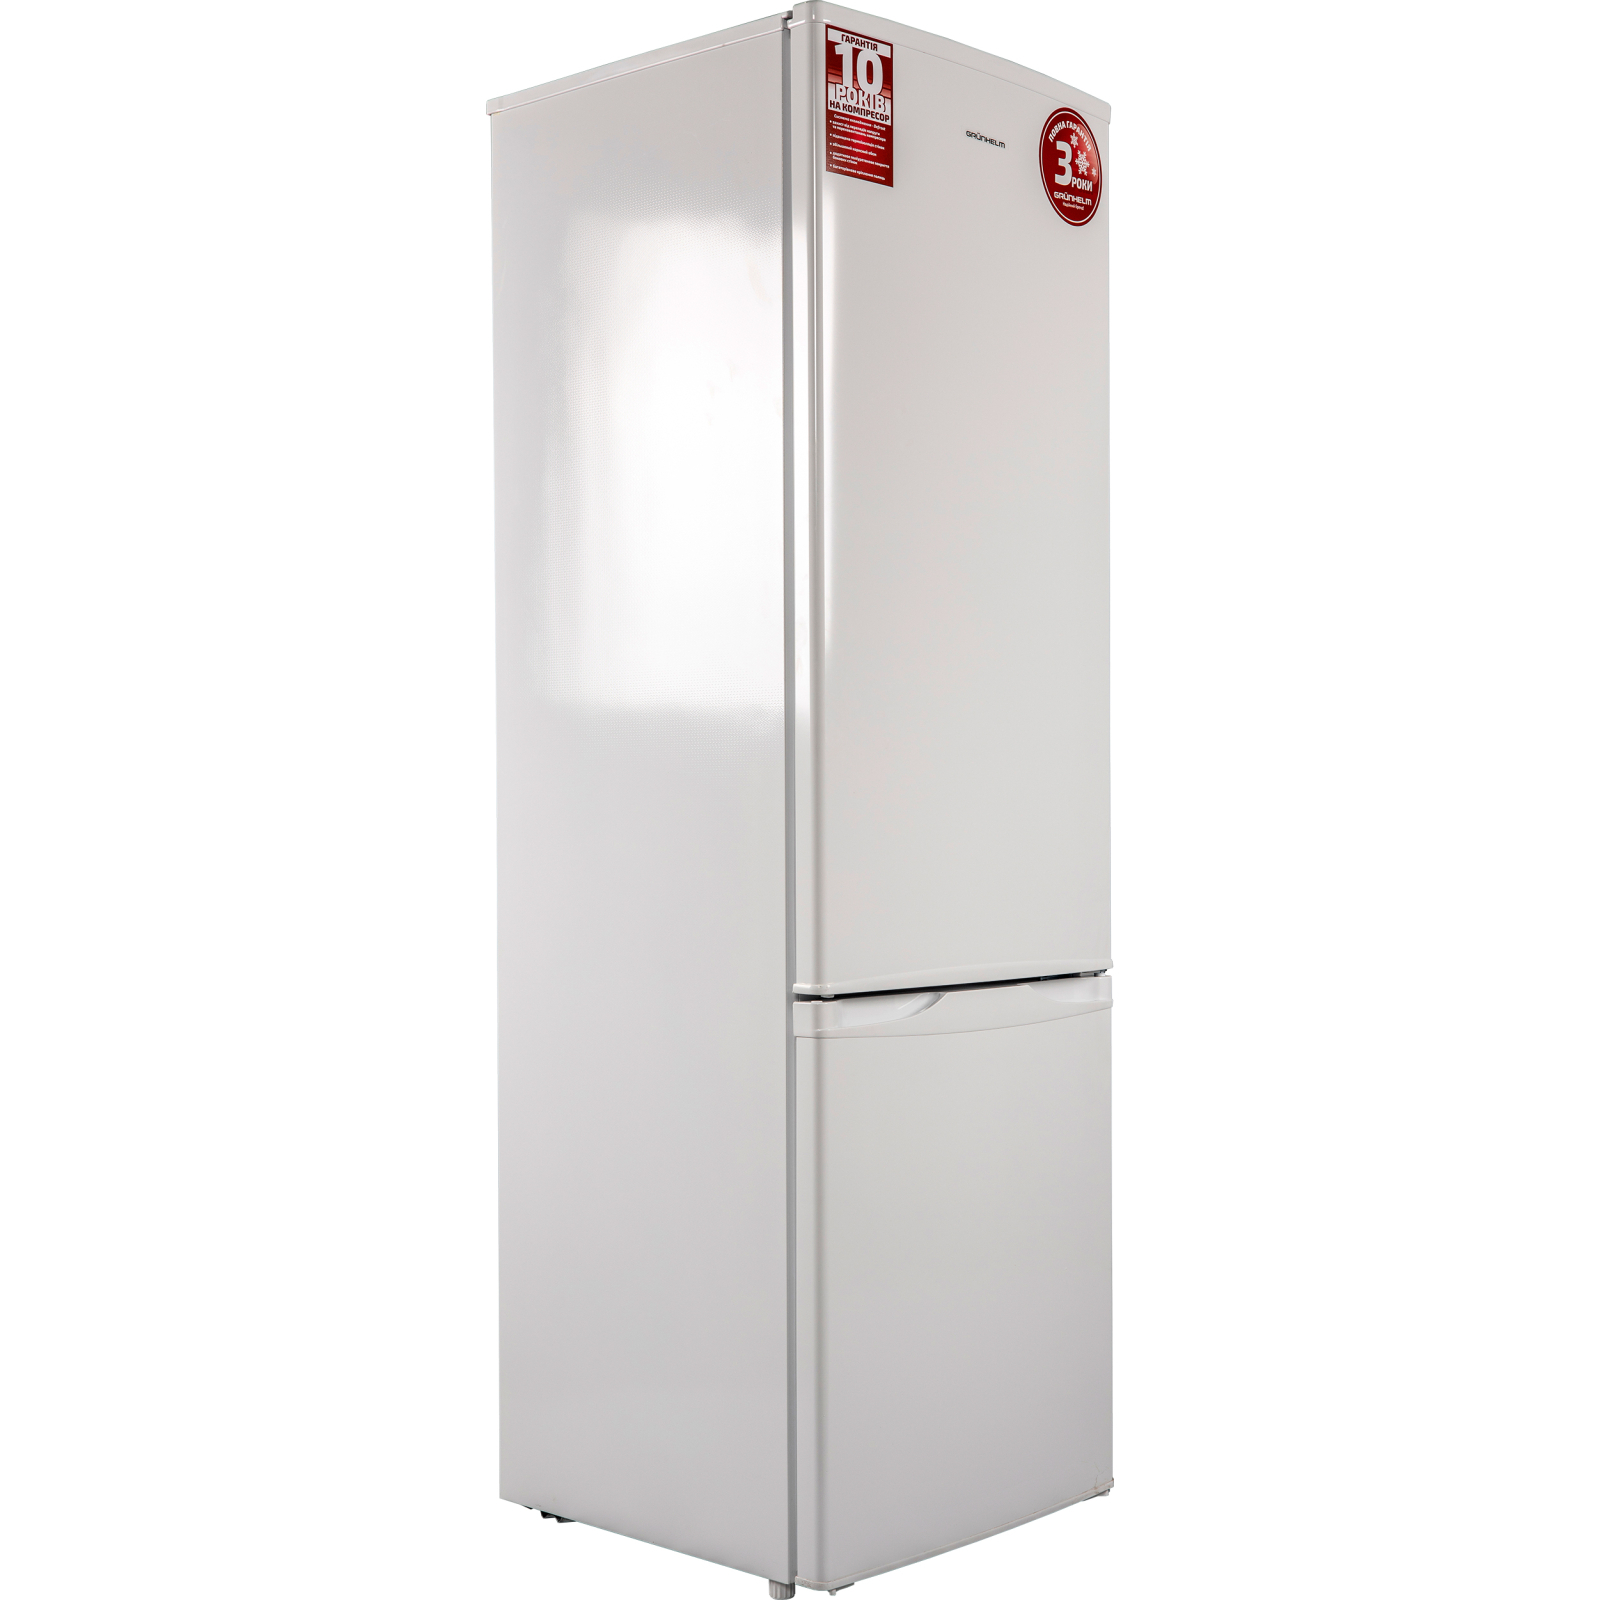 Холодильник Grunhelm BRH-S176M55-W изображение 2